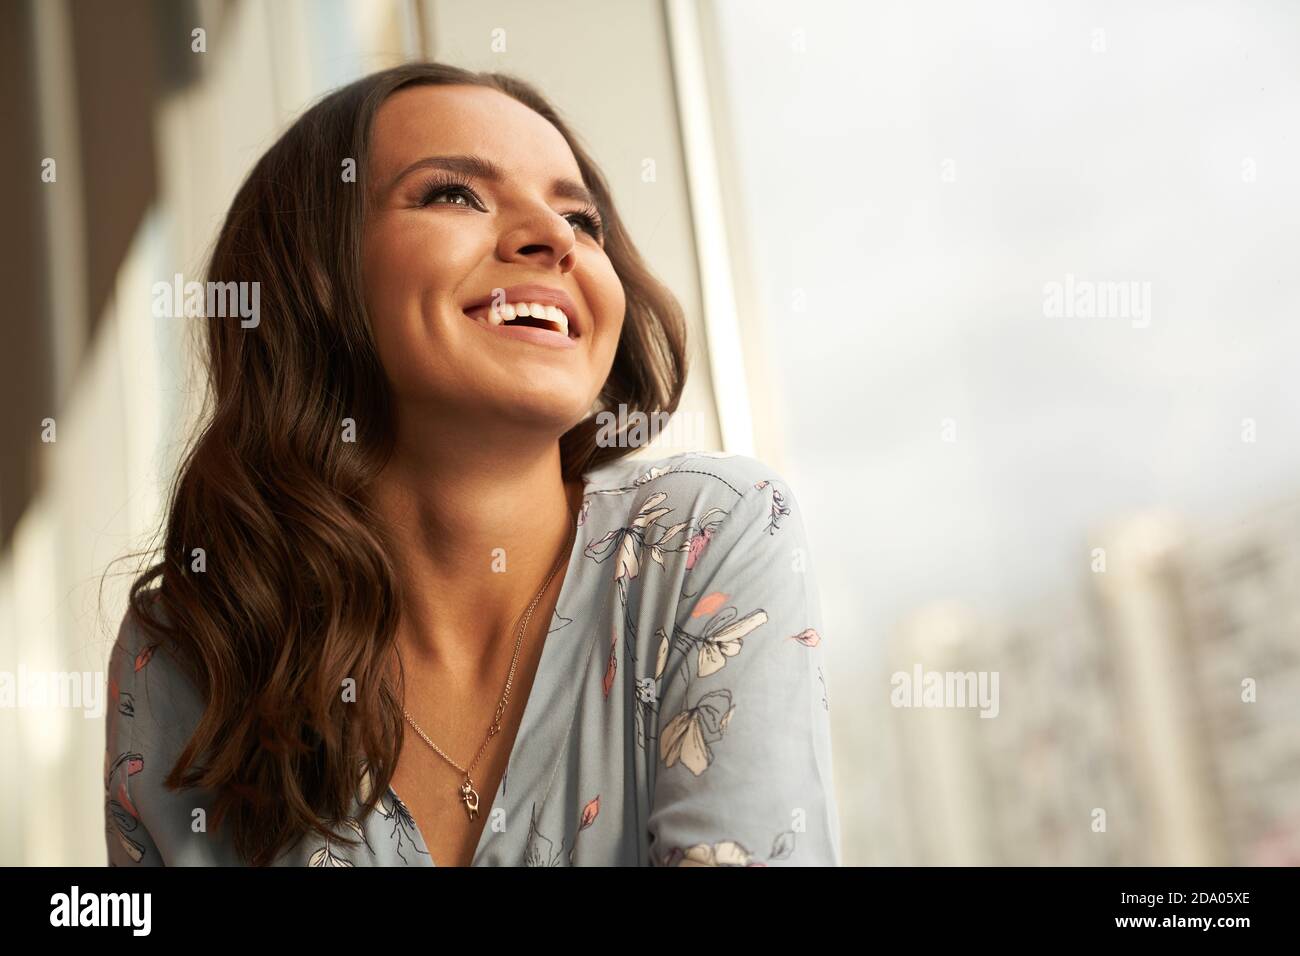 Eine schöne junge Frau glücklich und lächelnd blickt zum Fenster, das Mädchen hat perfekte Haut und ein schneeweißes Lächeln Stockfoto